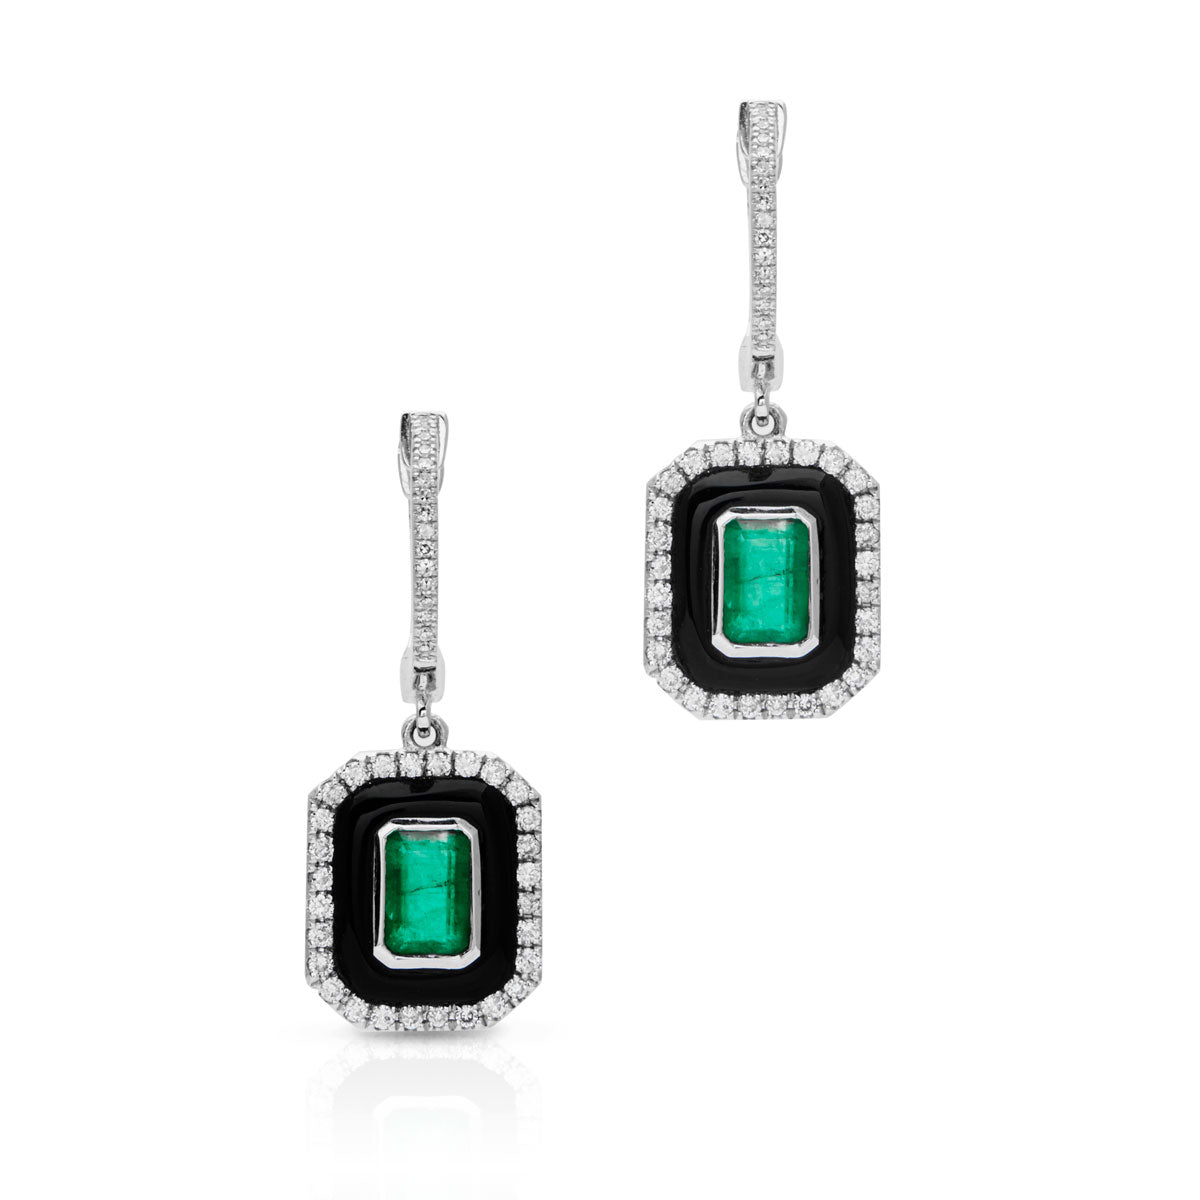 14KT White Gold Black Onyx Emerald Diamond Earrings